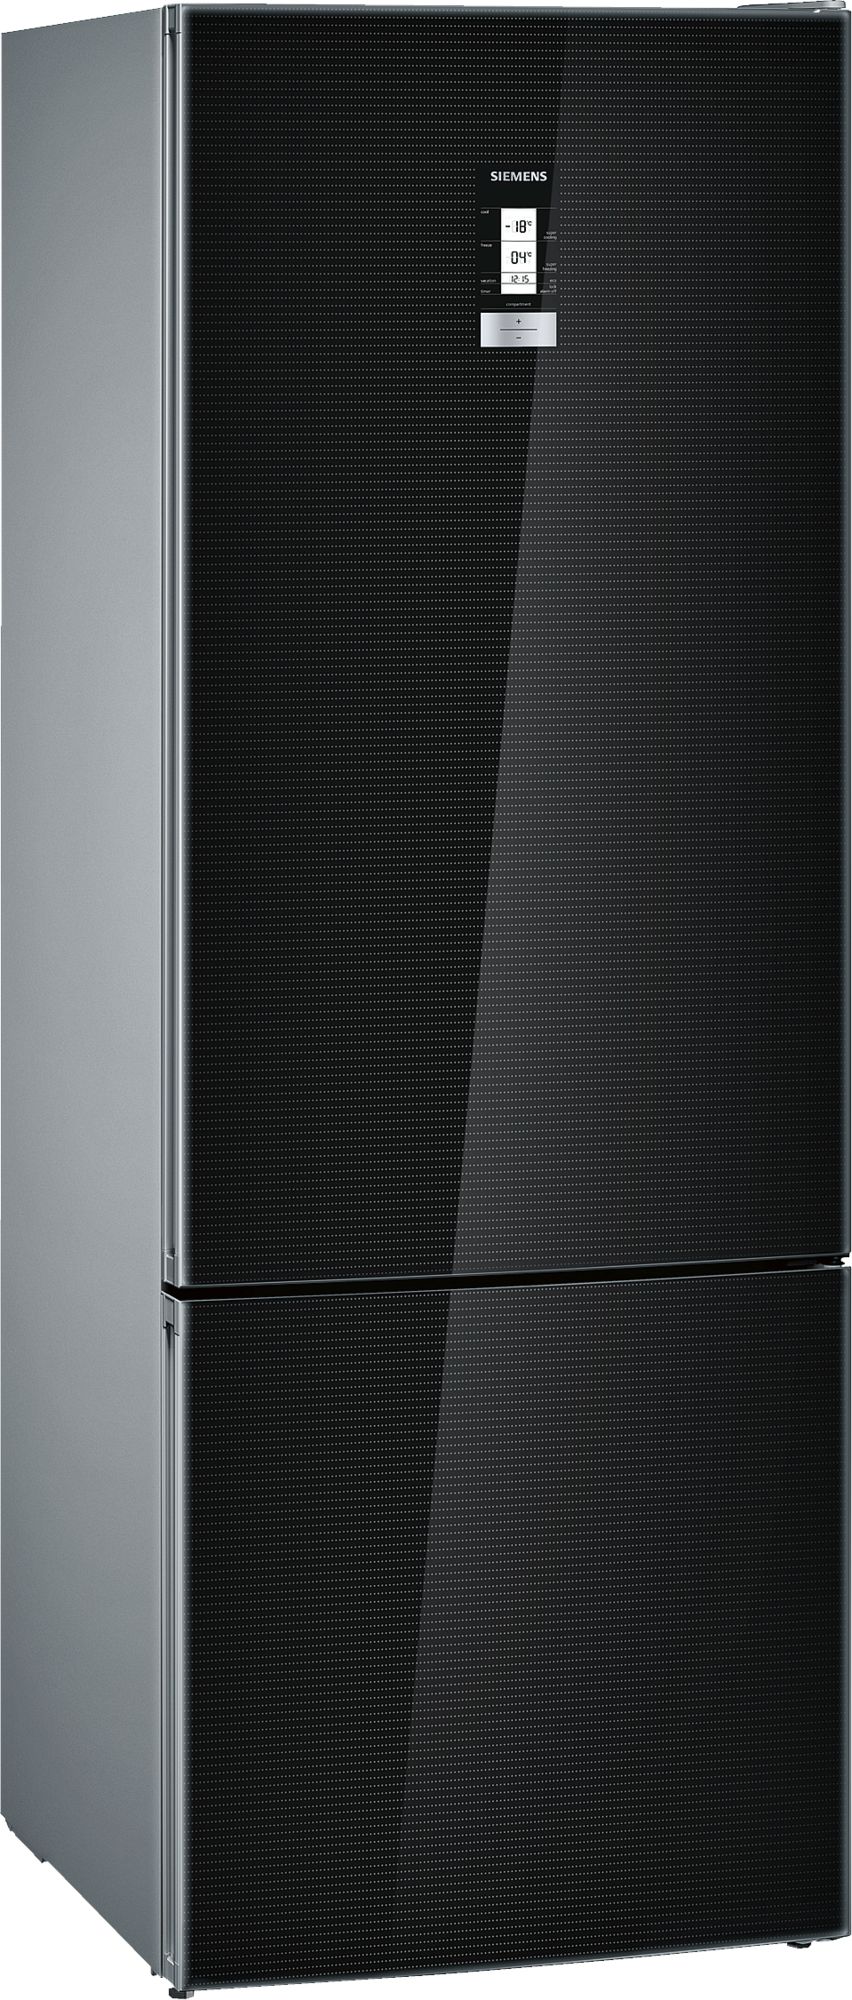 iQ500 Alttan Donduruculu Buzdolabı 193 x 70 cm siyah